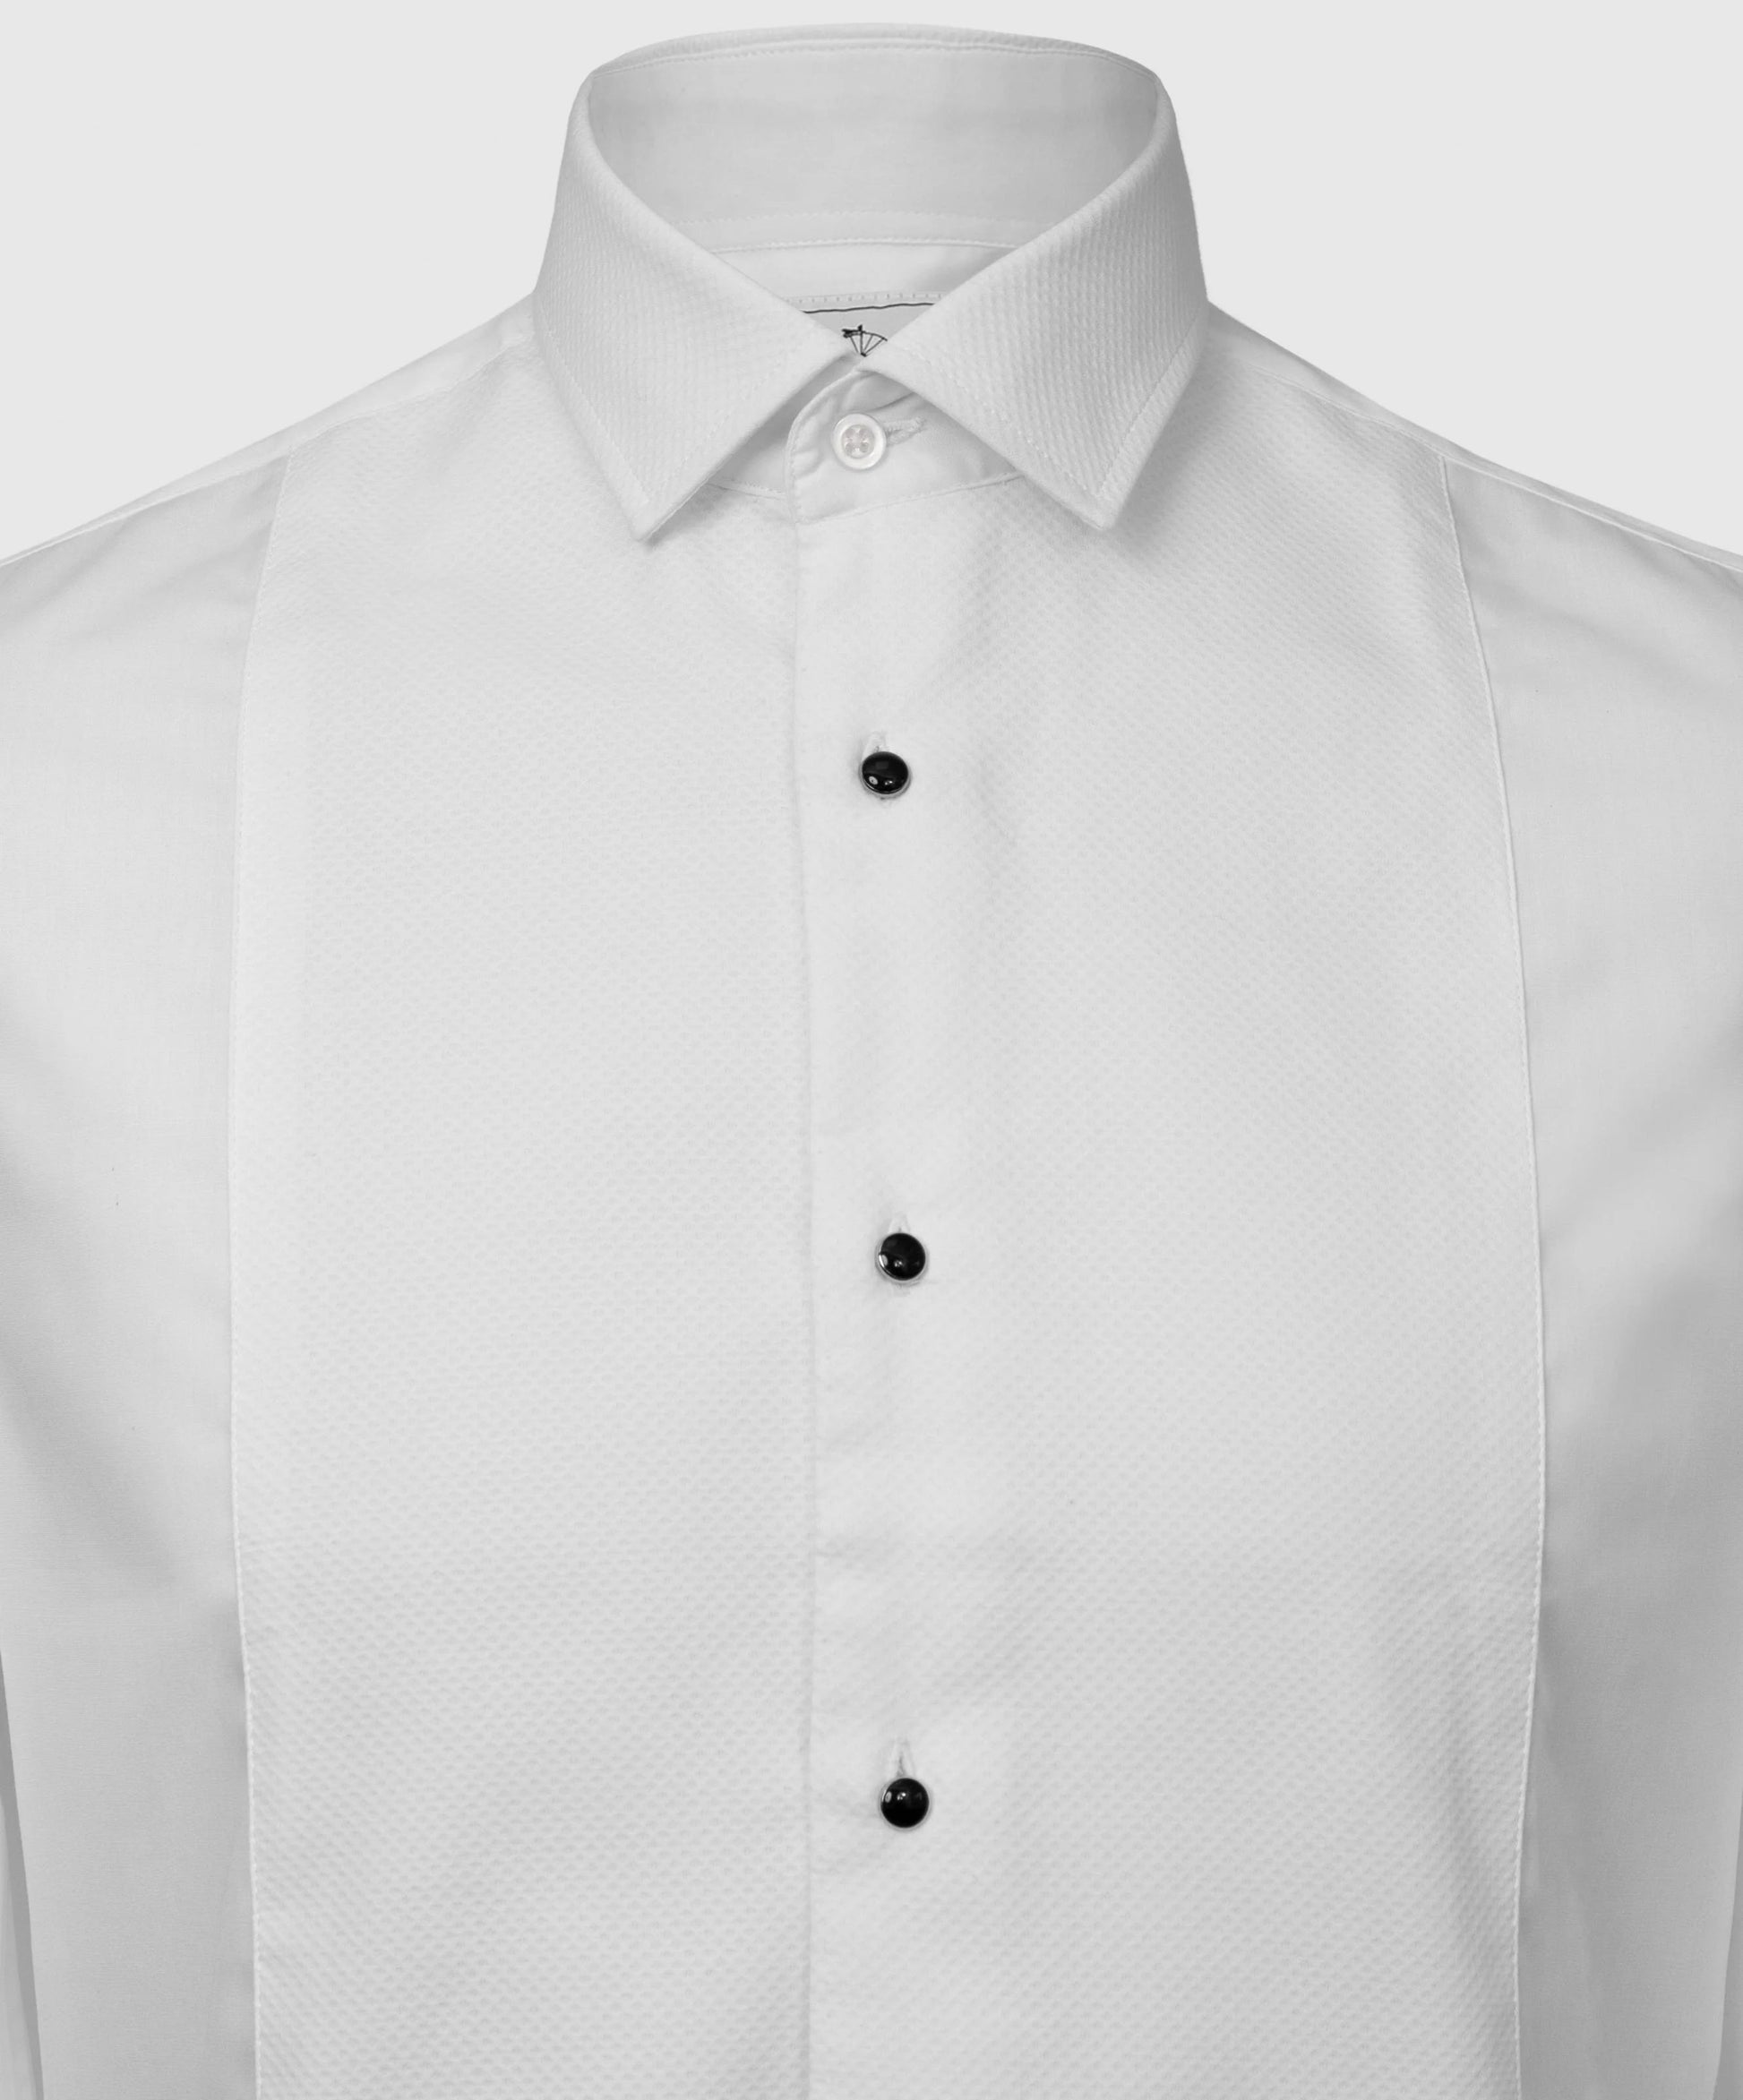 Marcella Standard Collar Dress Shirt - Shirts - 14.5" - THREADPEPPER